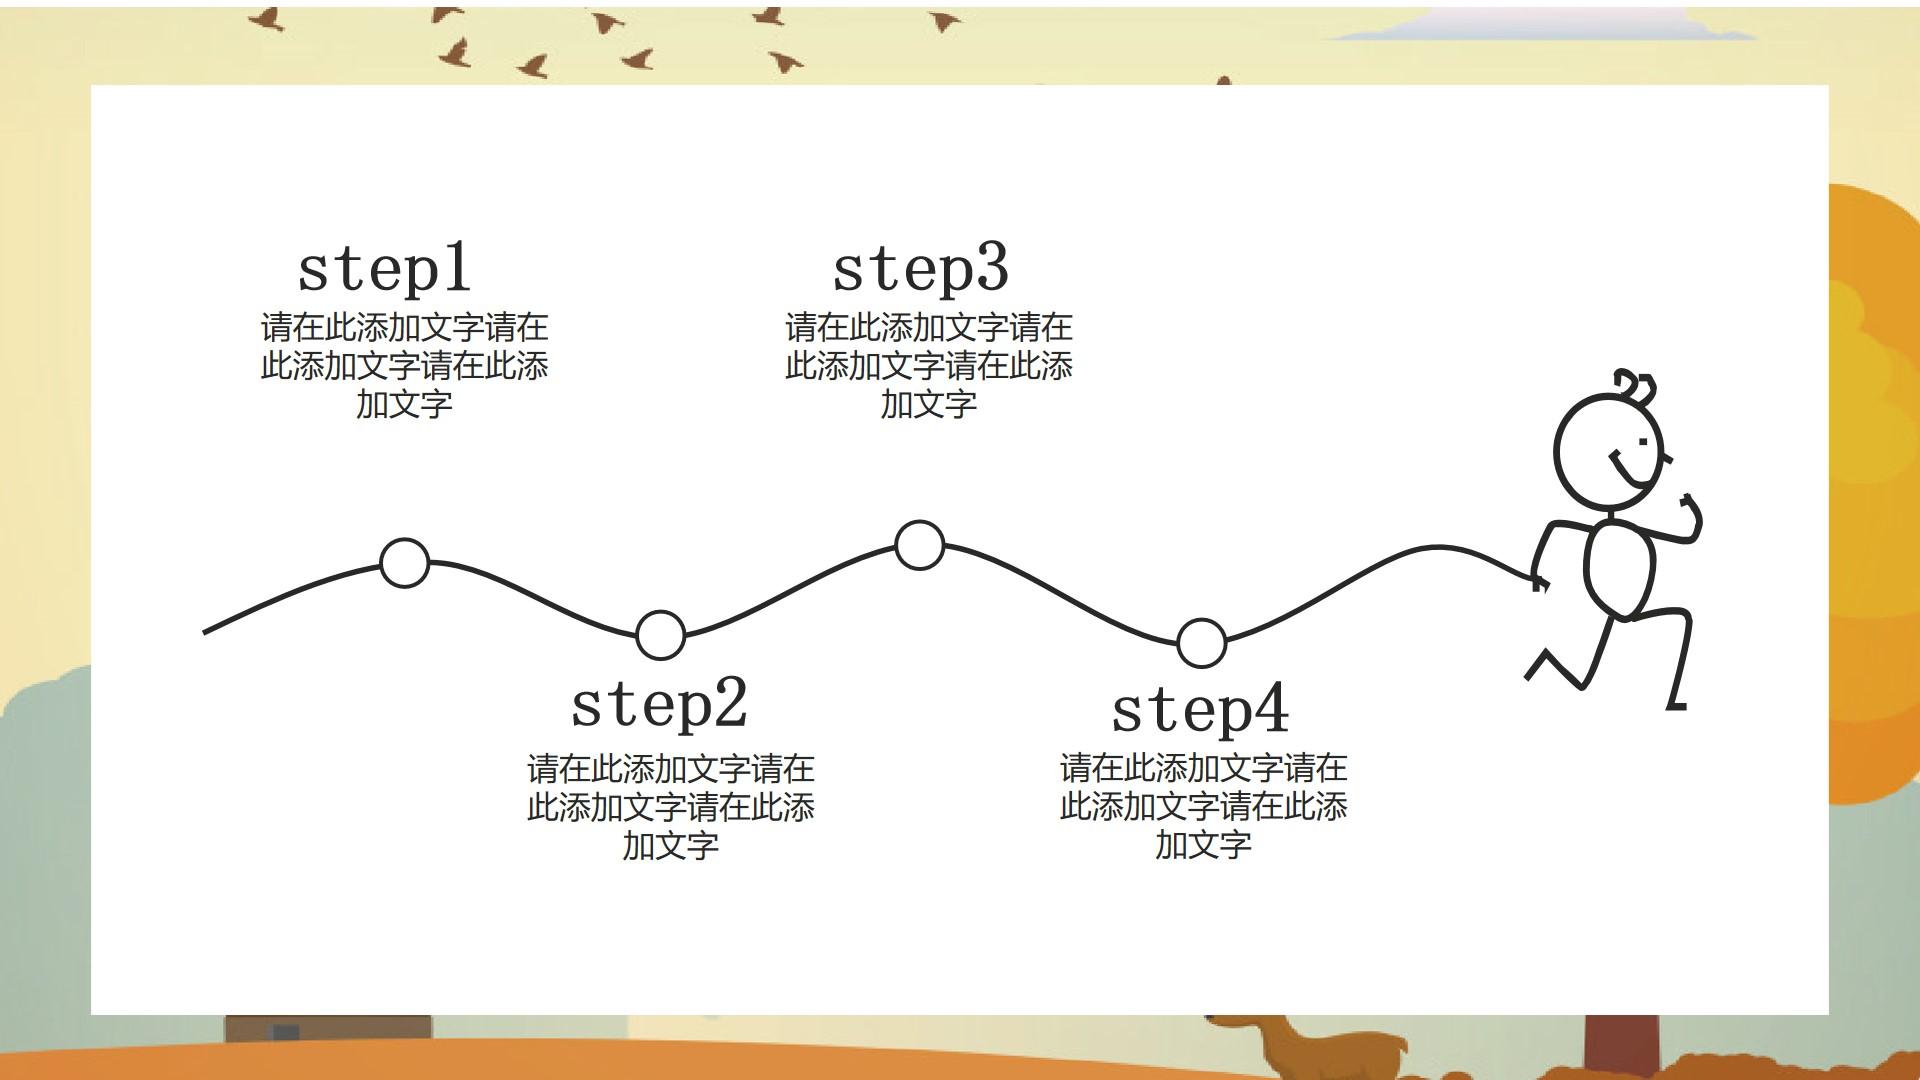 教育教学黄色橙色白色卡通标准step1 step2 step3 step4云素材PPT模板1672601164563